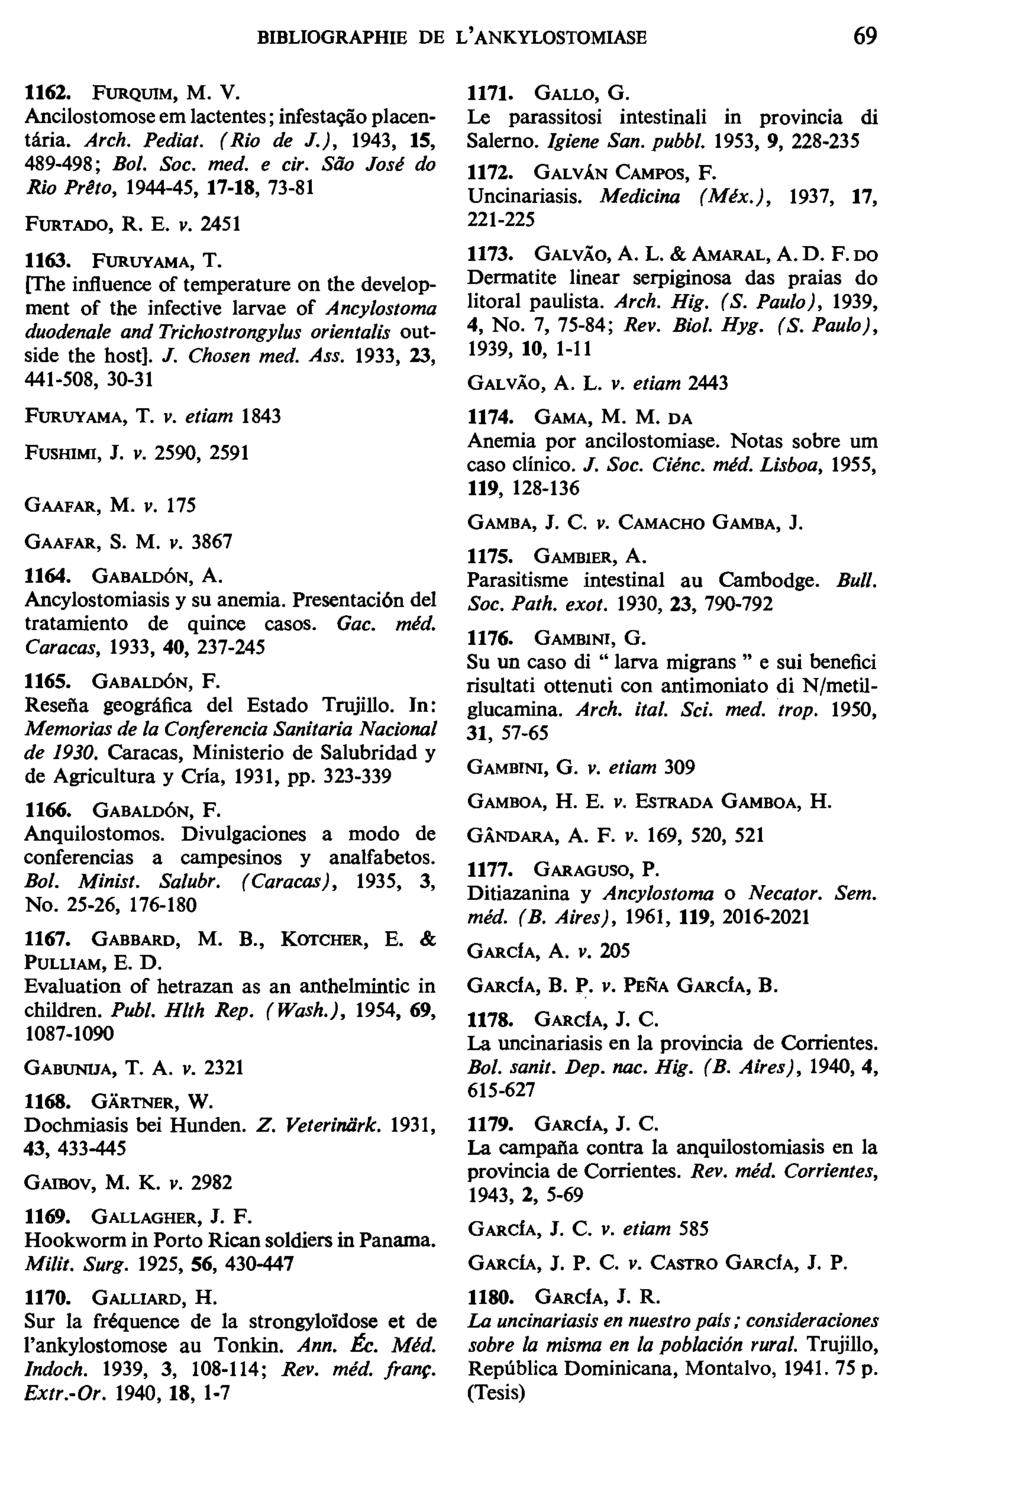 BIBLIOGRAPHIE DE L'ANKYLOSTOMIASE 69 1162. FURQUIM, M. V. Ancilostomose em lactentes; infesta~o placentaria. Arch. Pediat. (Rio de J.), 1943, 15, 489-498; Bol. Soc. med. e cir.